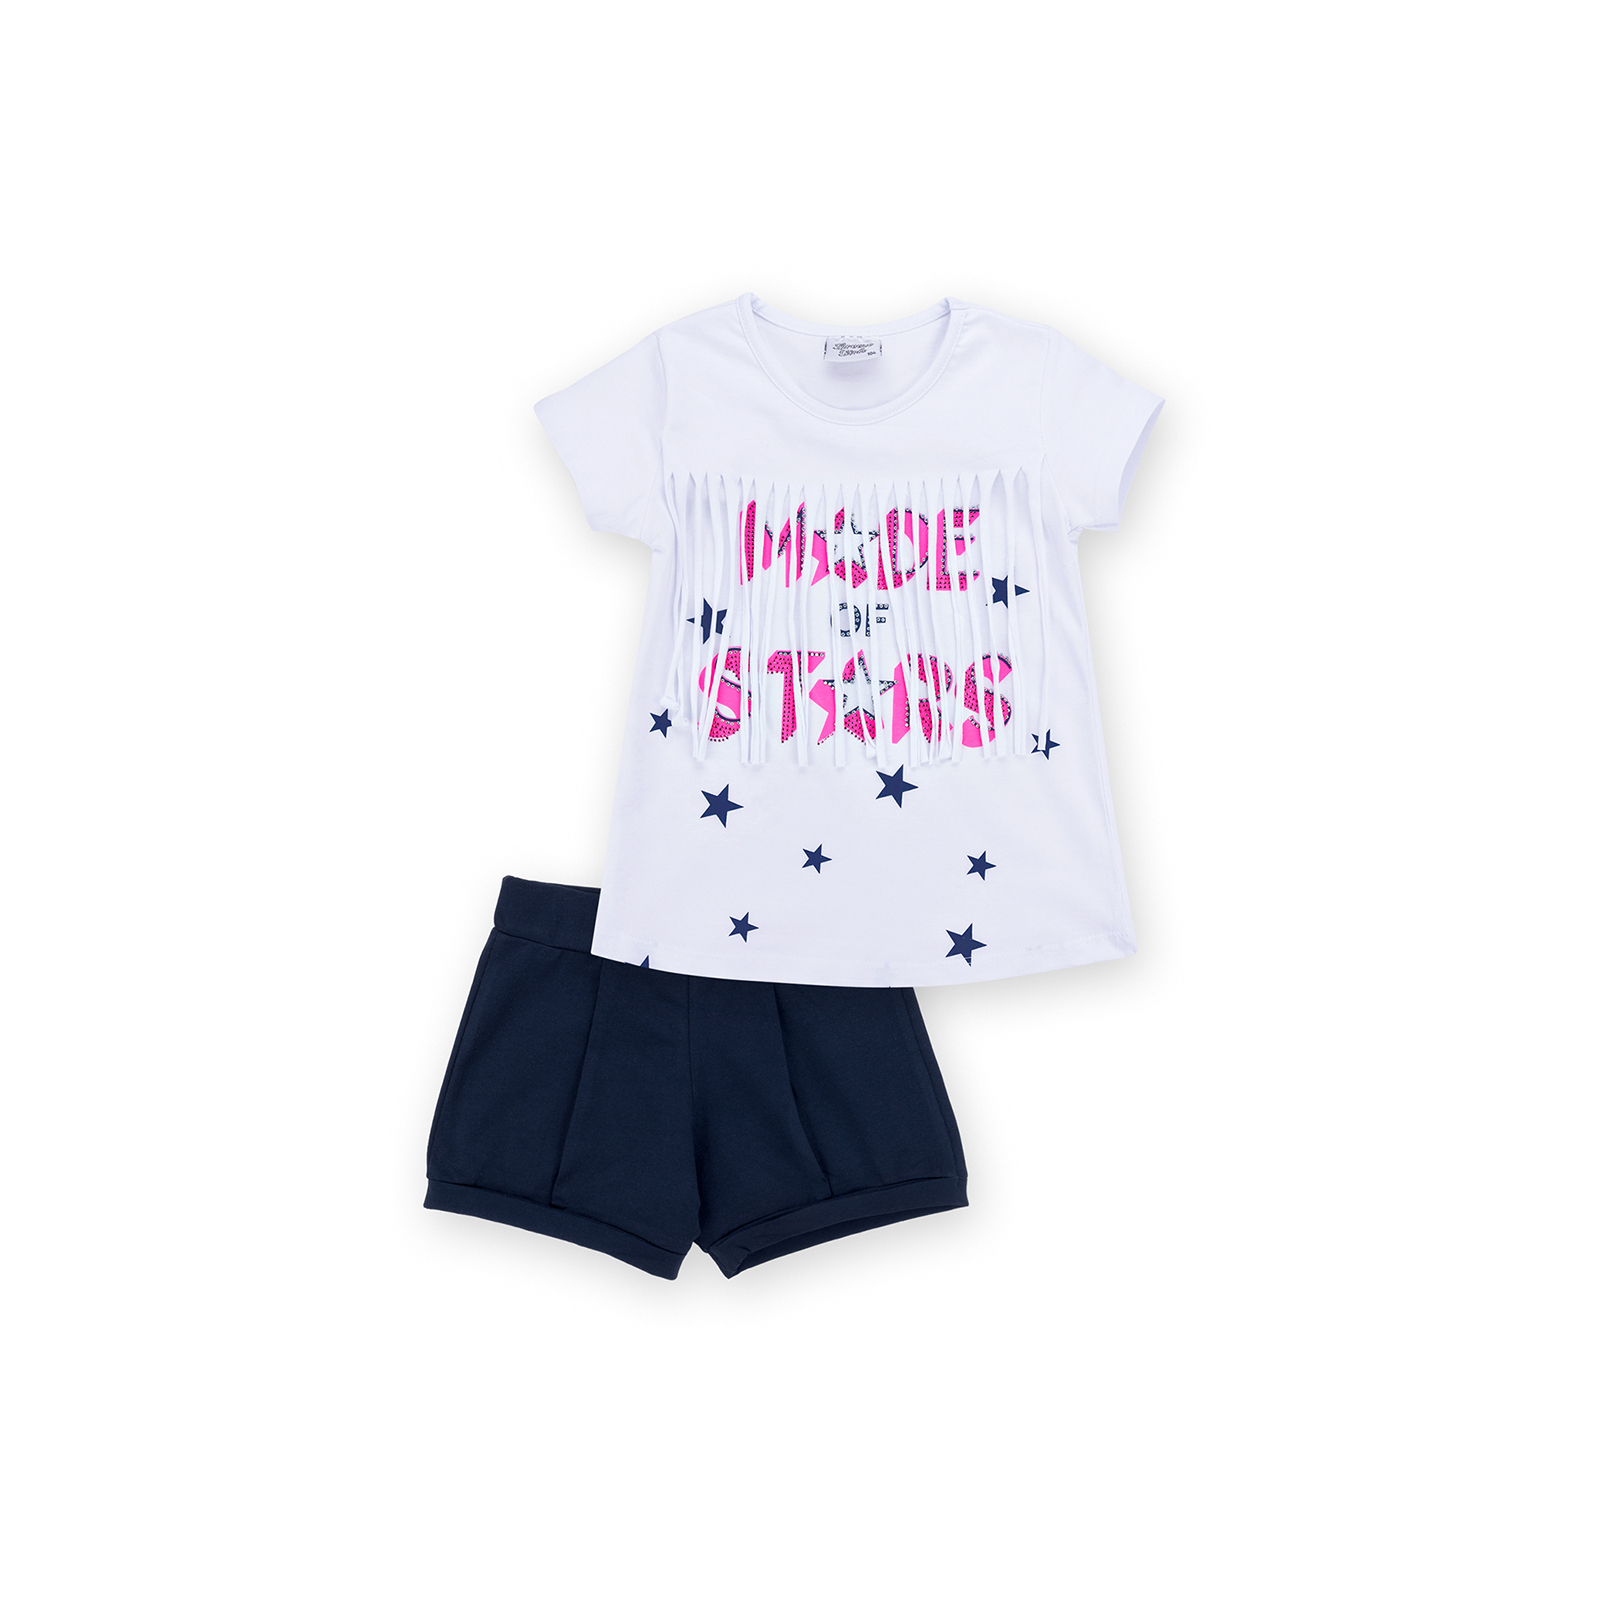 Набор детской одежды Breeze футболка со звездочками с шортами (9036-116G-white)